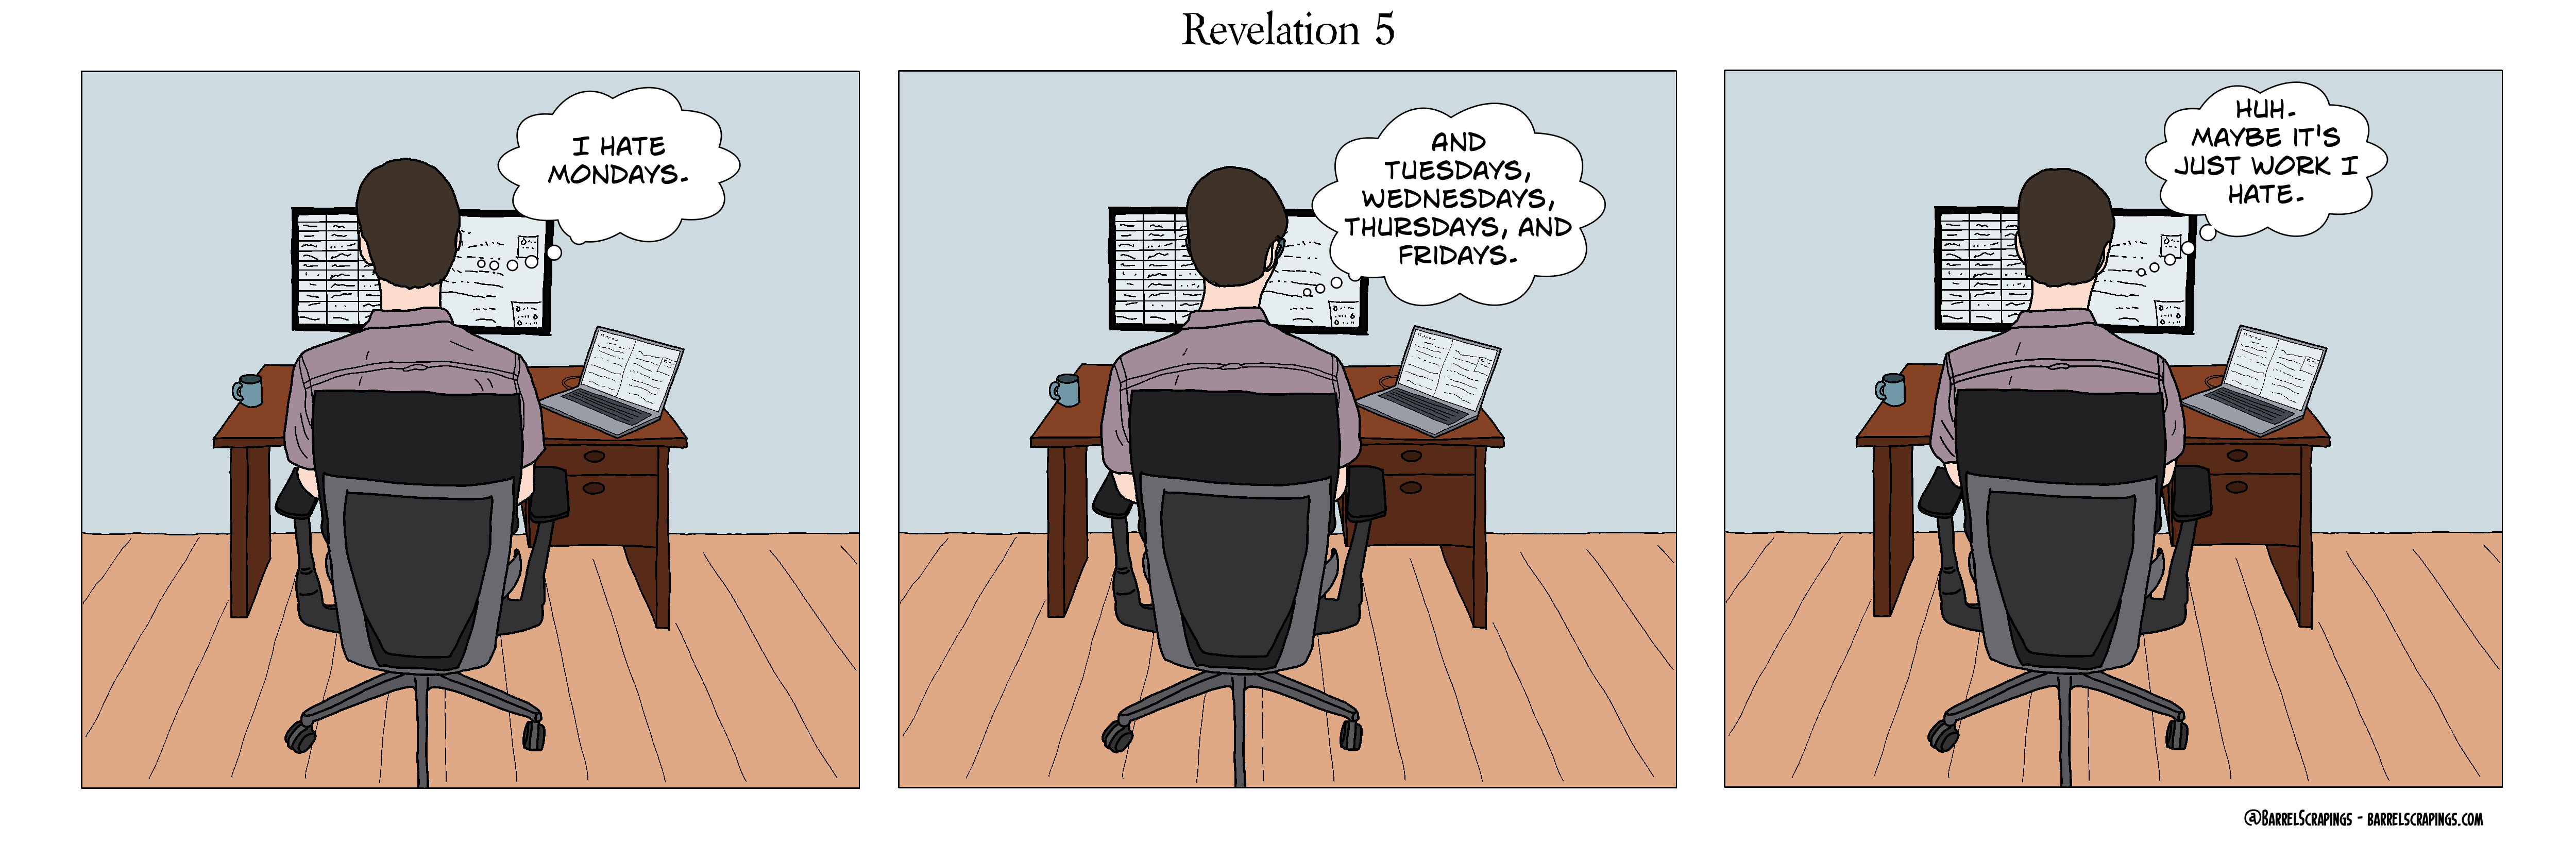 image from Revelation 5